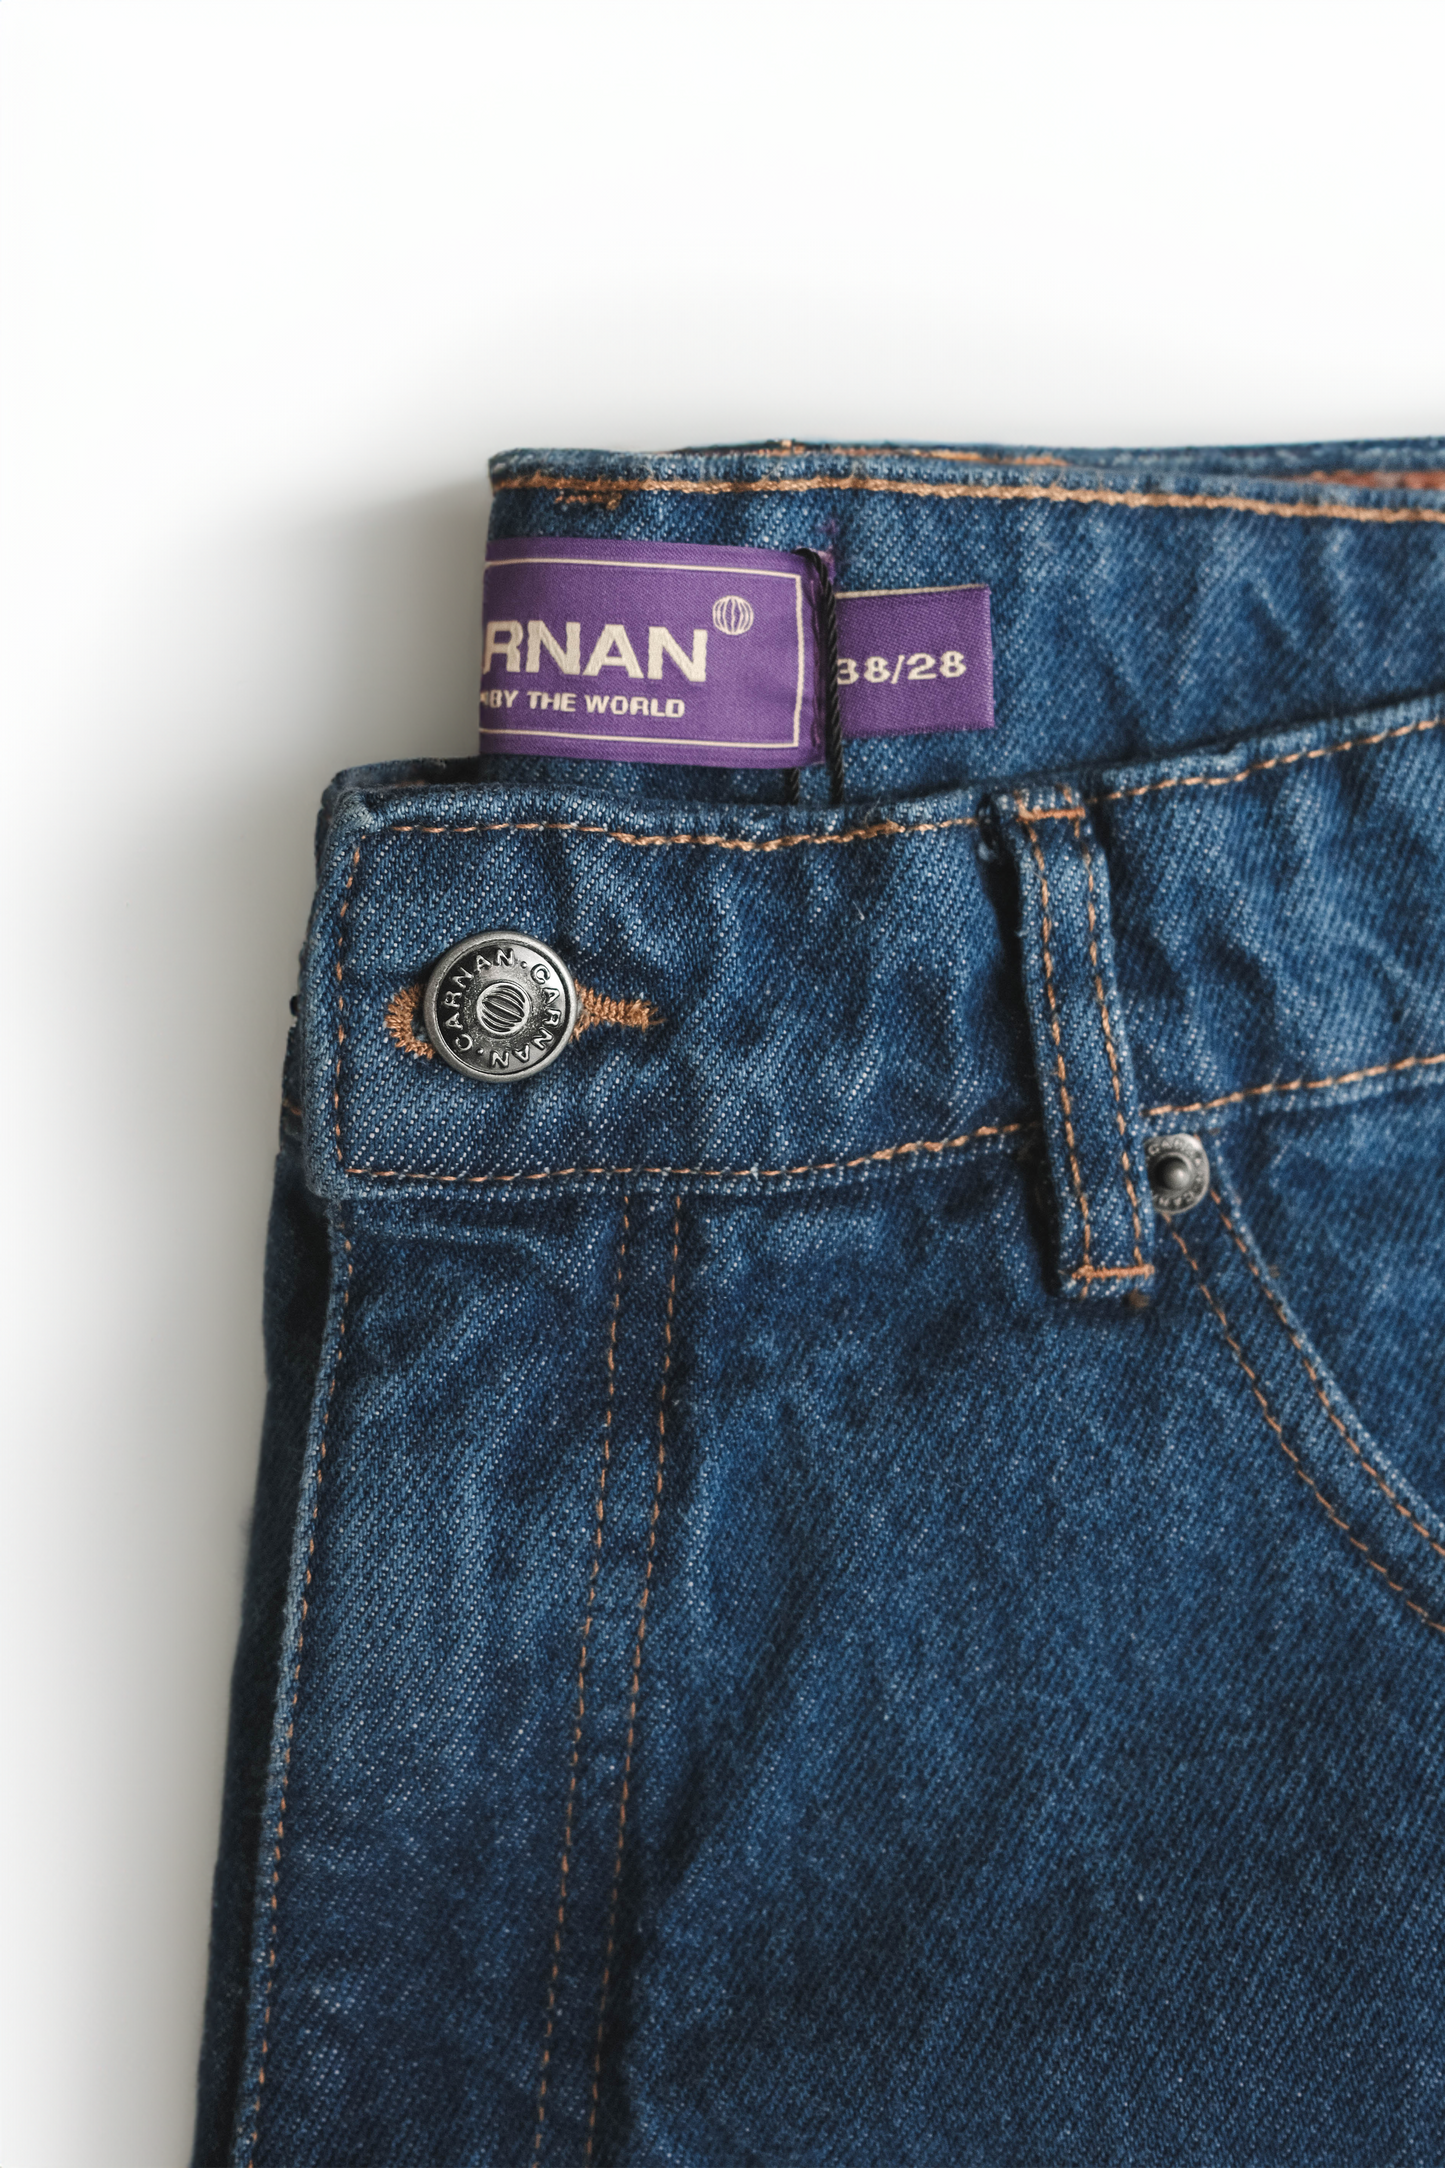 Carnan Standard Jeans - Blue